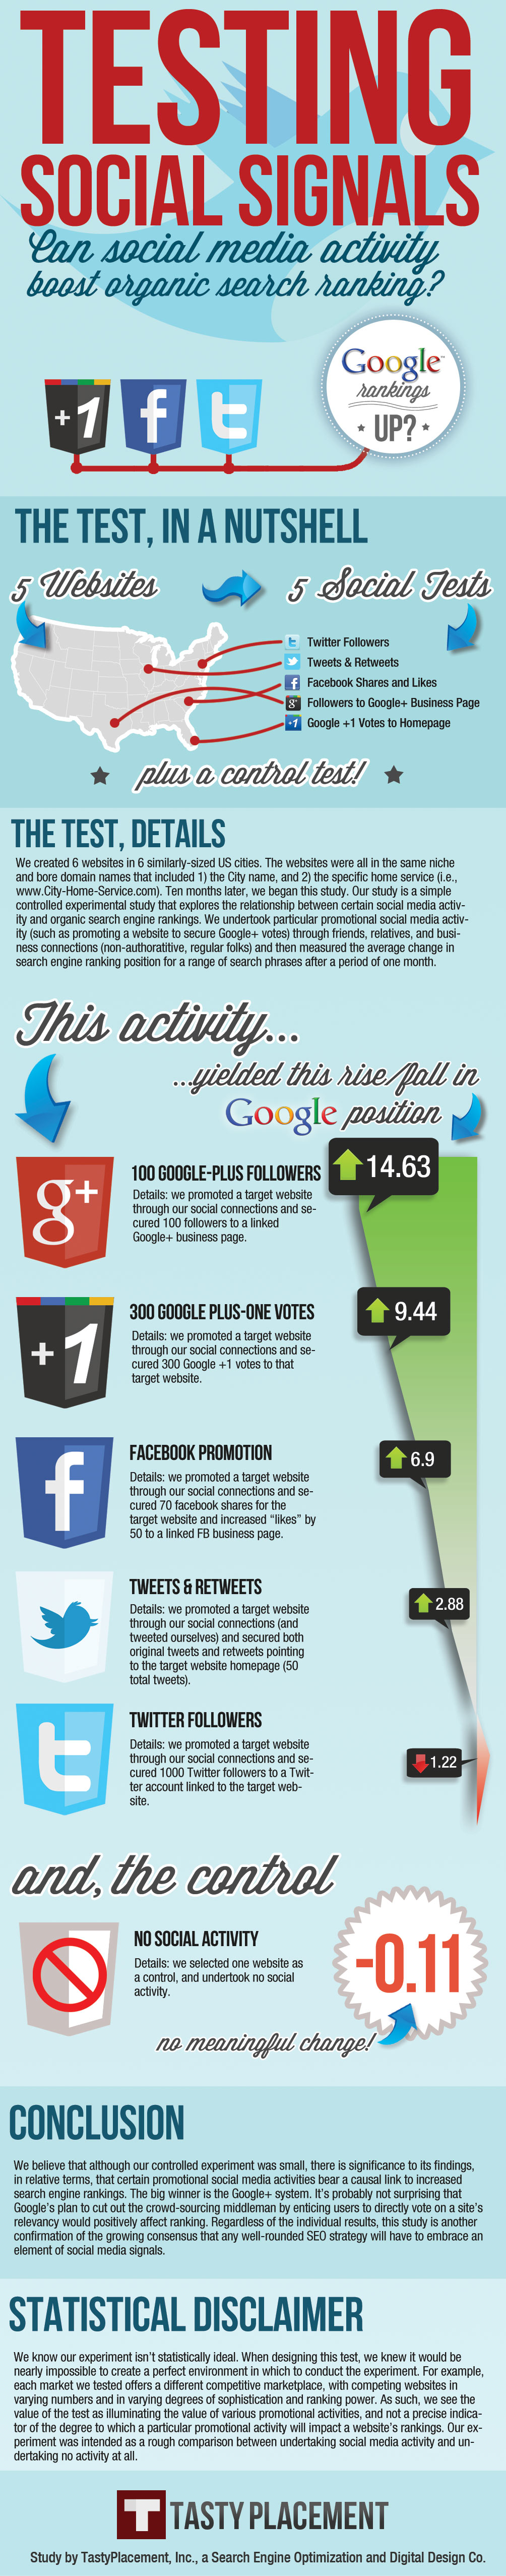 Google+ vs. Facebook vs. Twitter for SEO